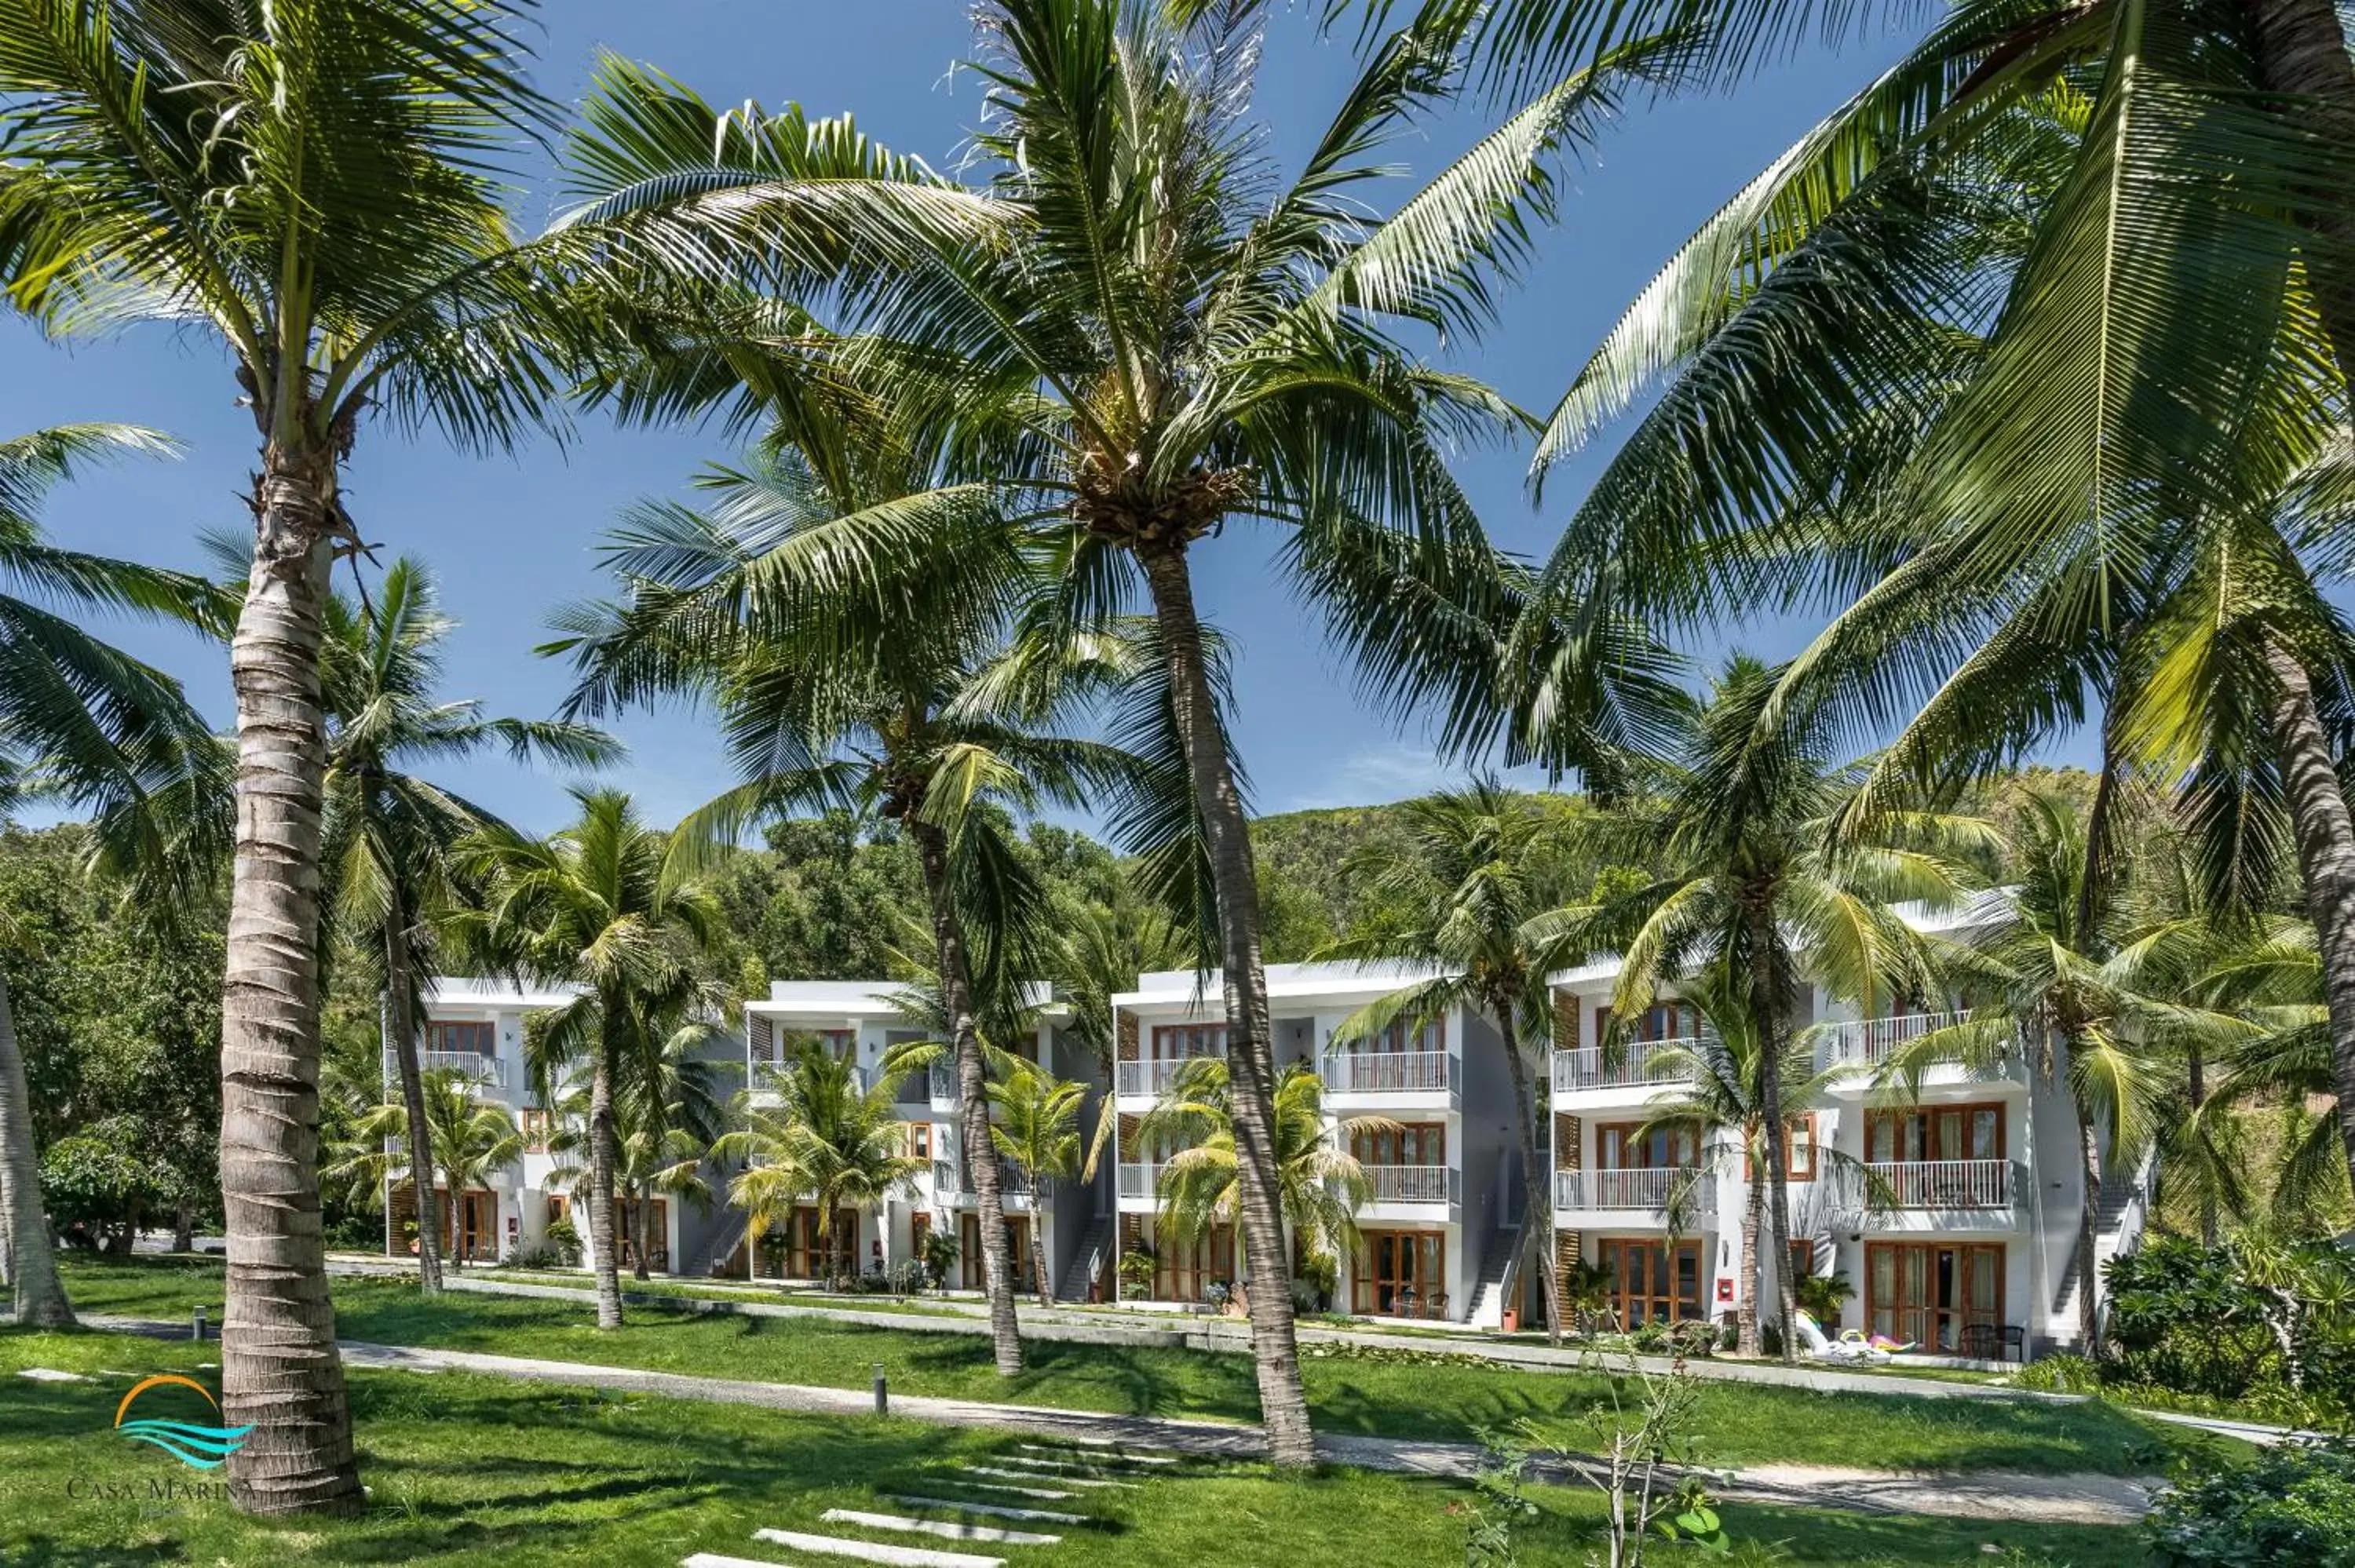 Garden view, Property Building in Casa Marina Resort